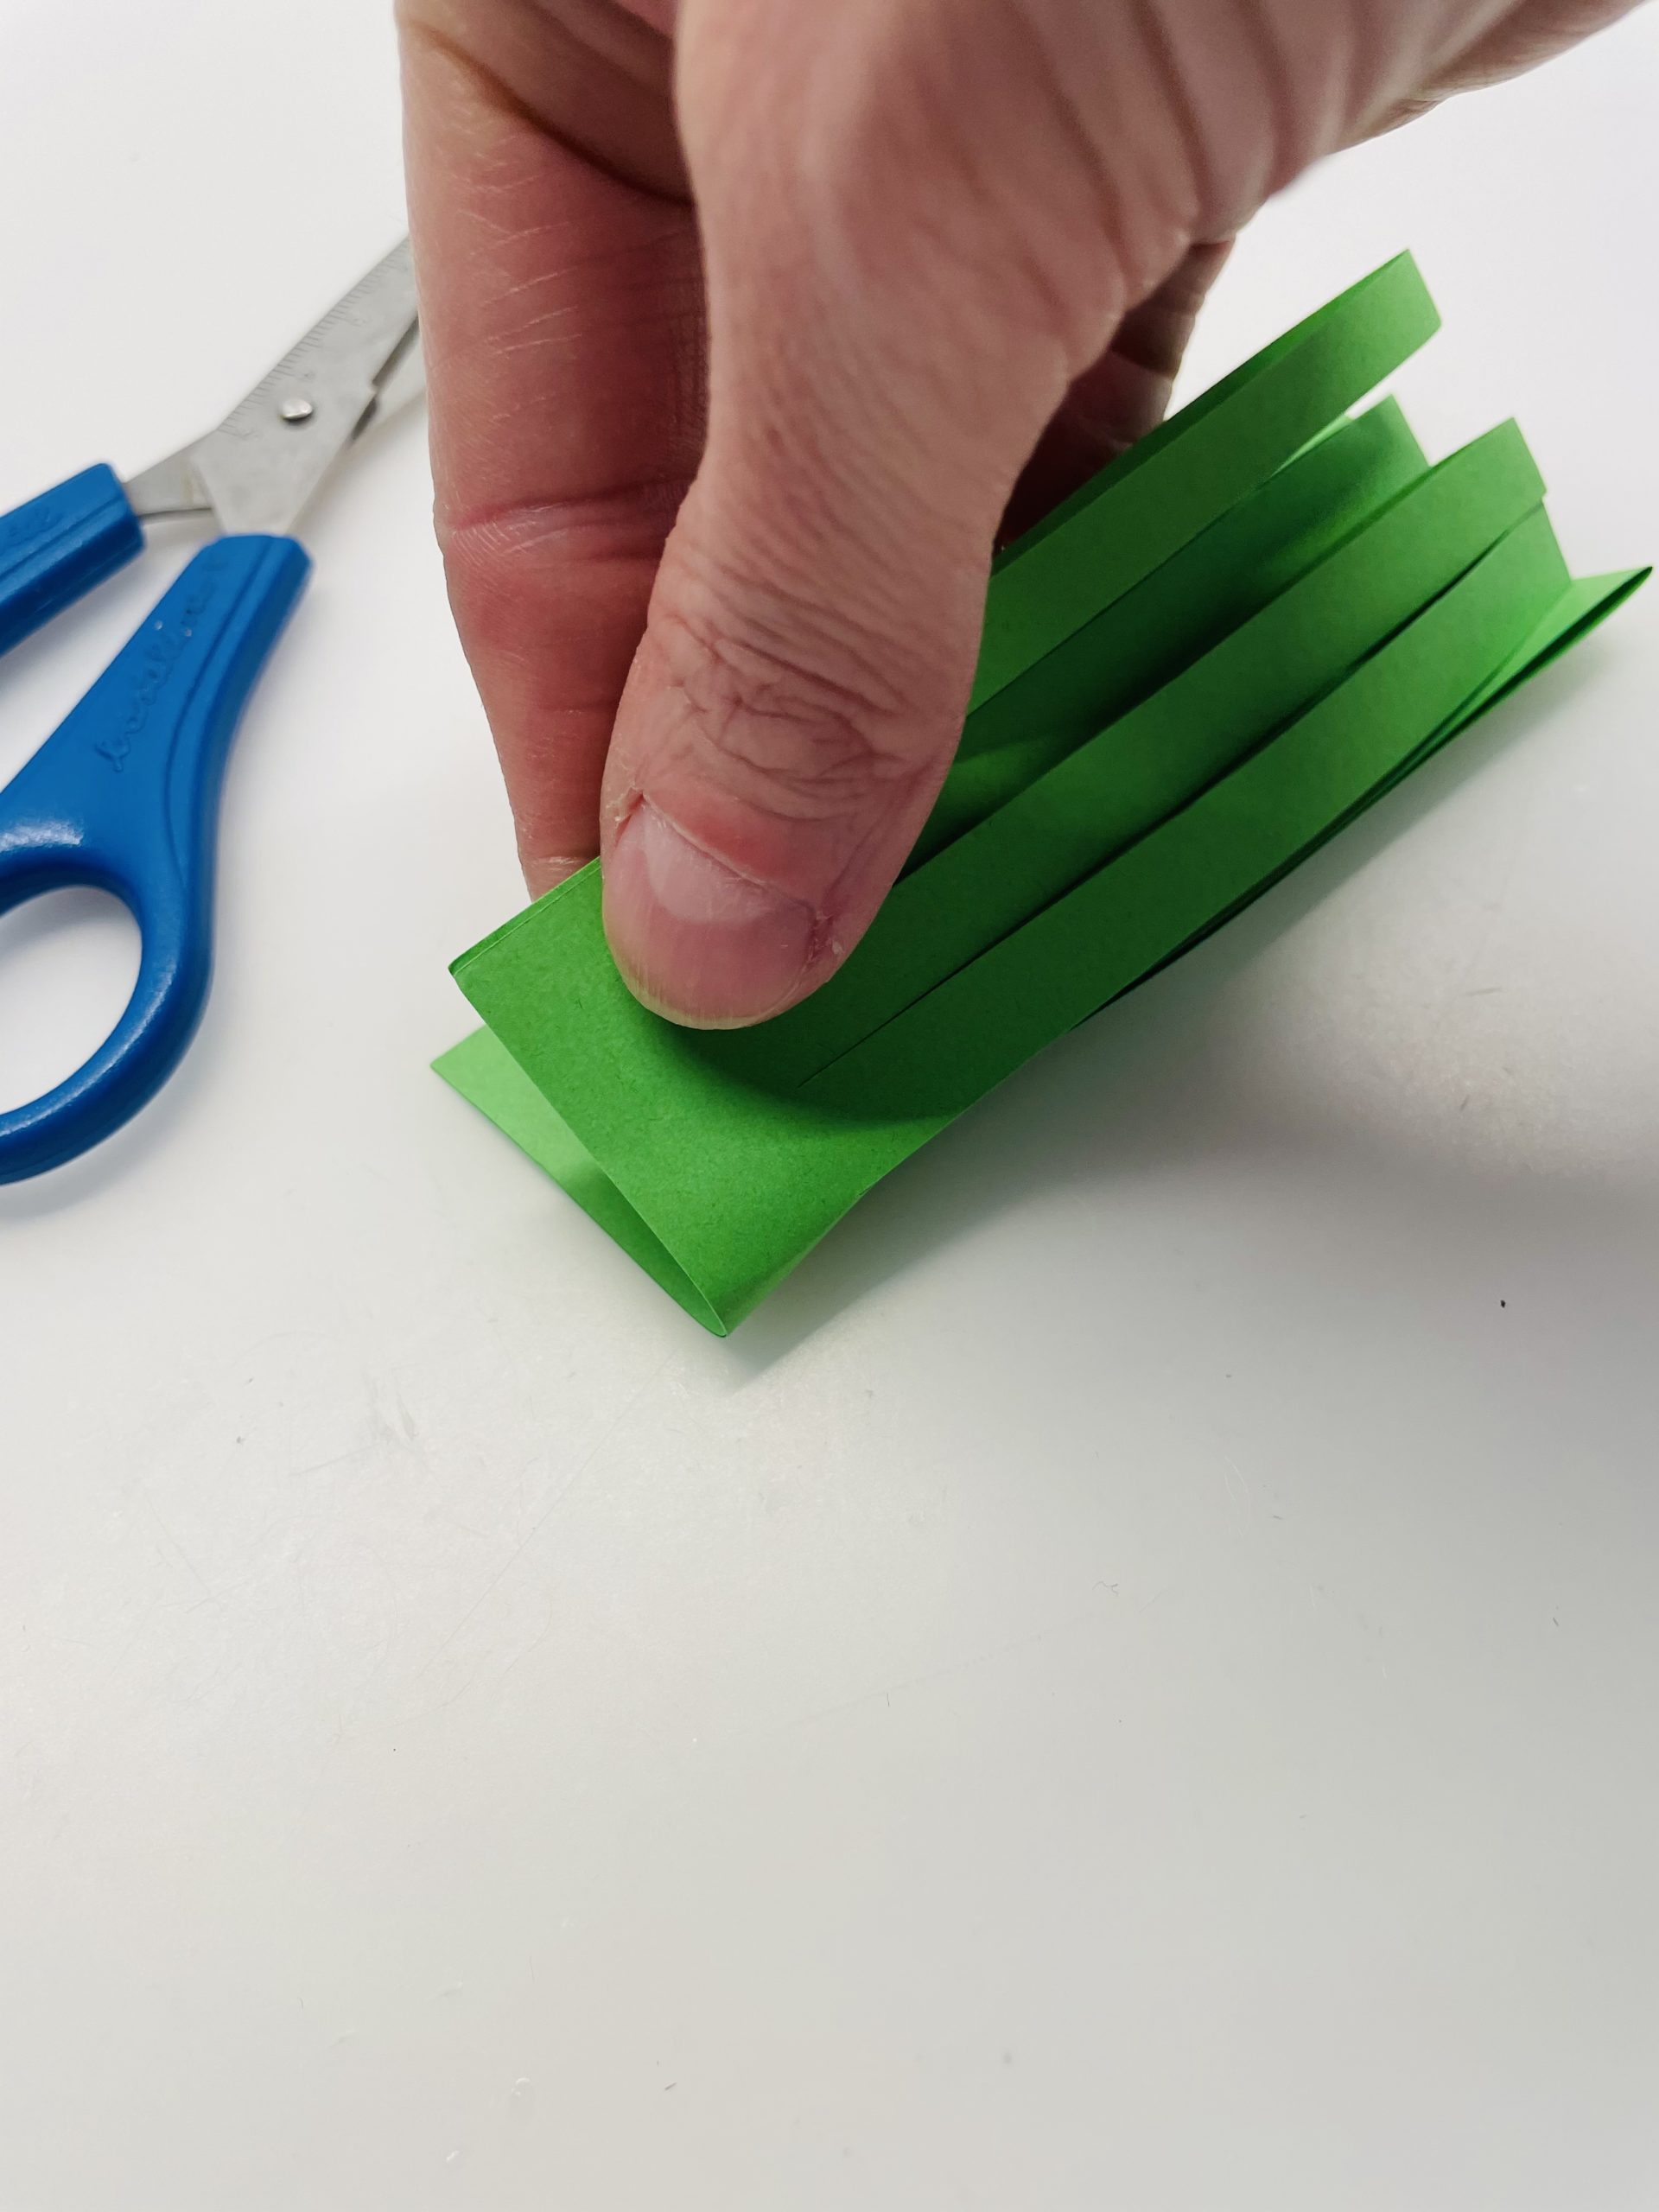 Bild zum Schritt 16 für das Bastel- und DIY-Abenteuer für Kinder: 'Faltet das geschnittene Papier nun zur Hälfte. So liegen die...'